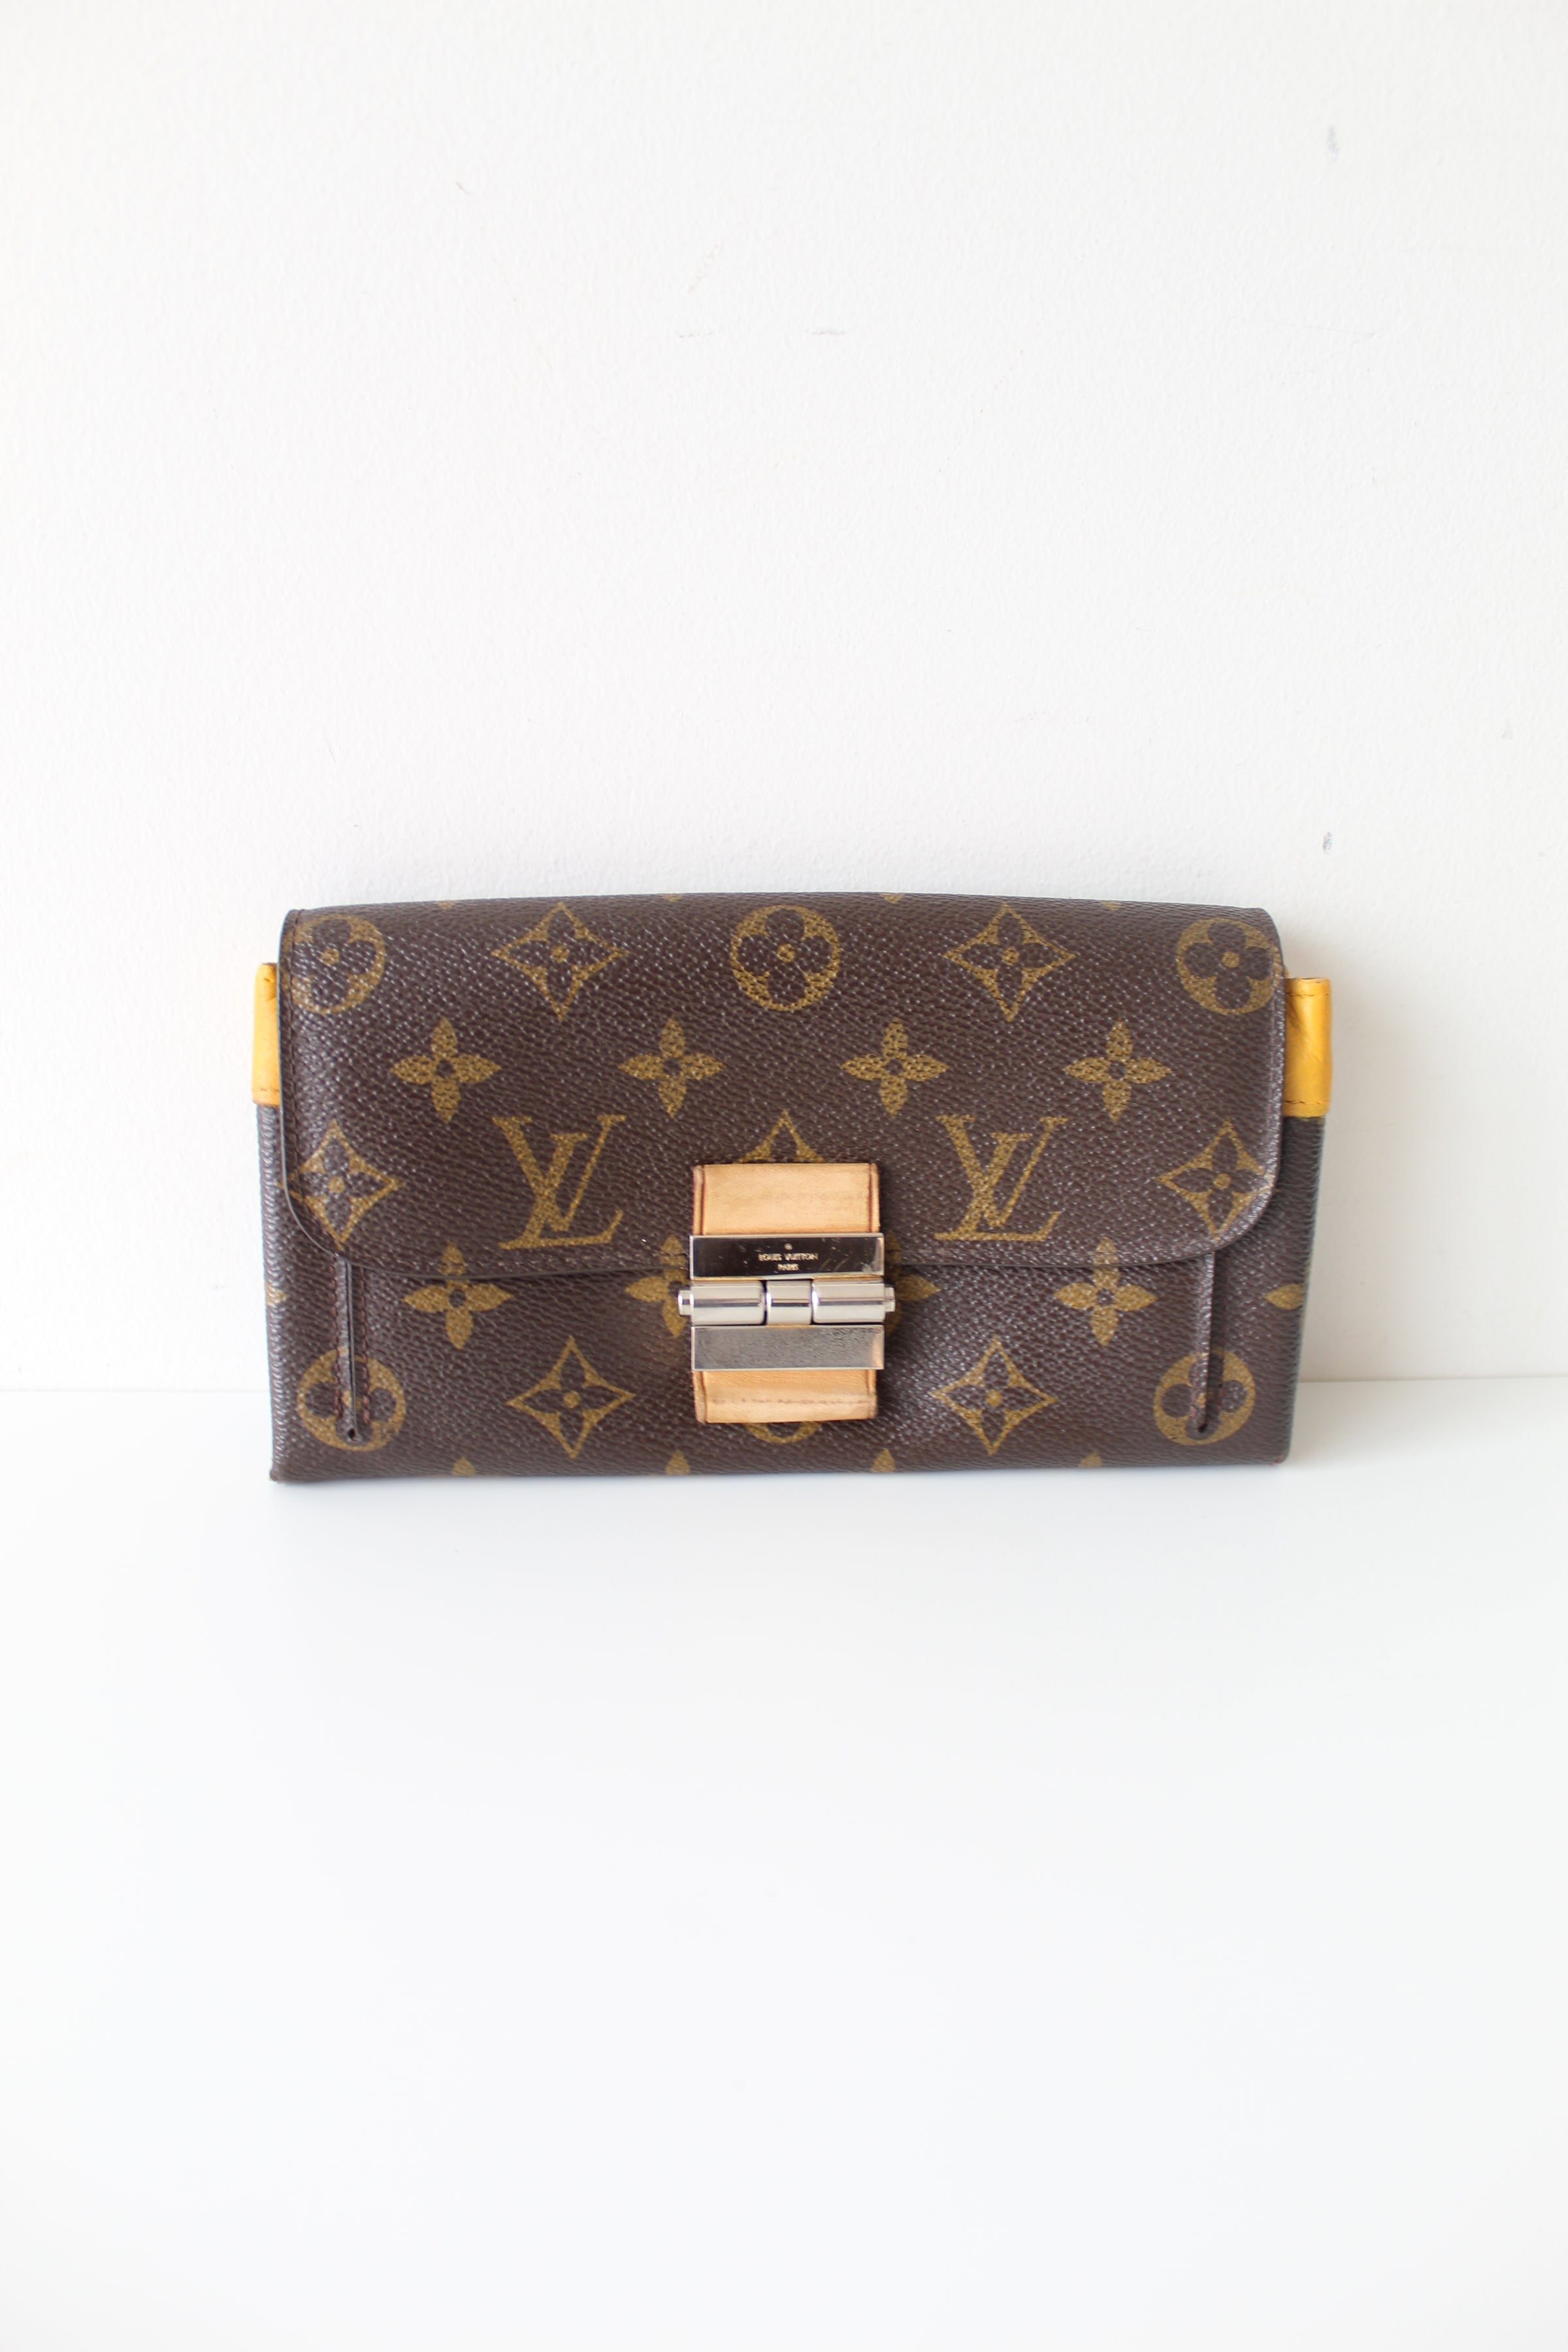 Louis Vuitton Elysee Wallet – Closet Connection Resale